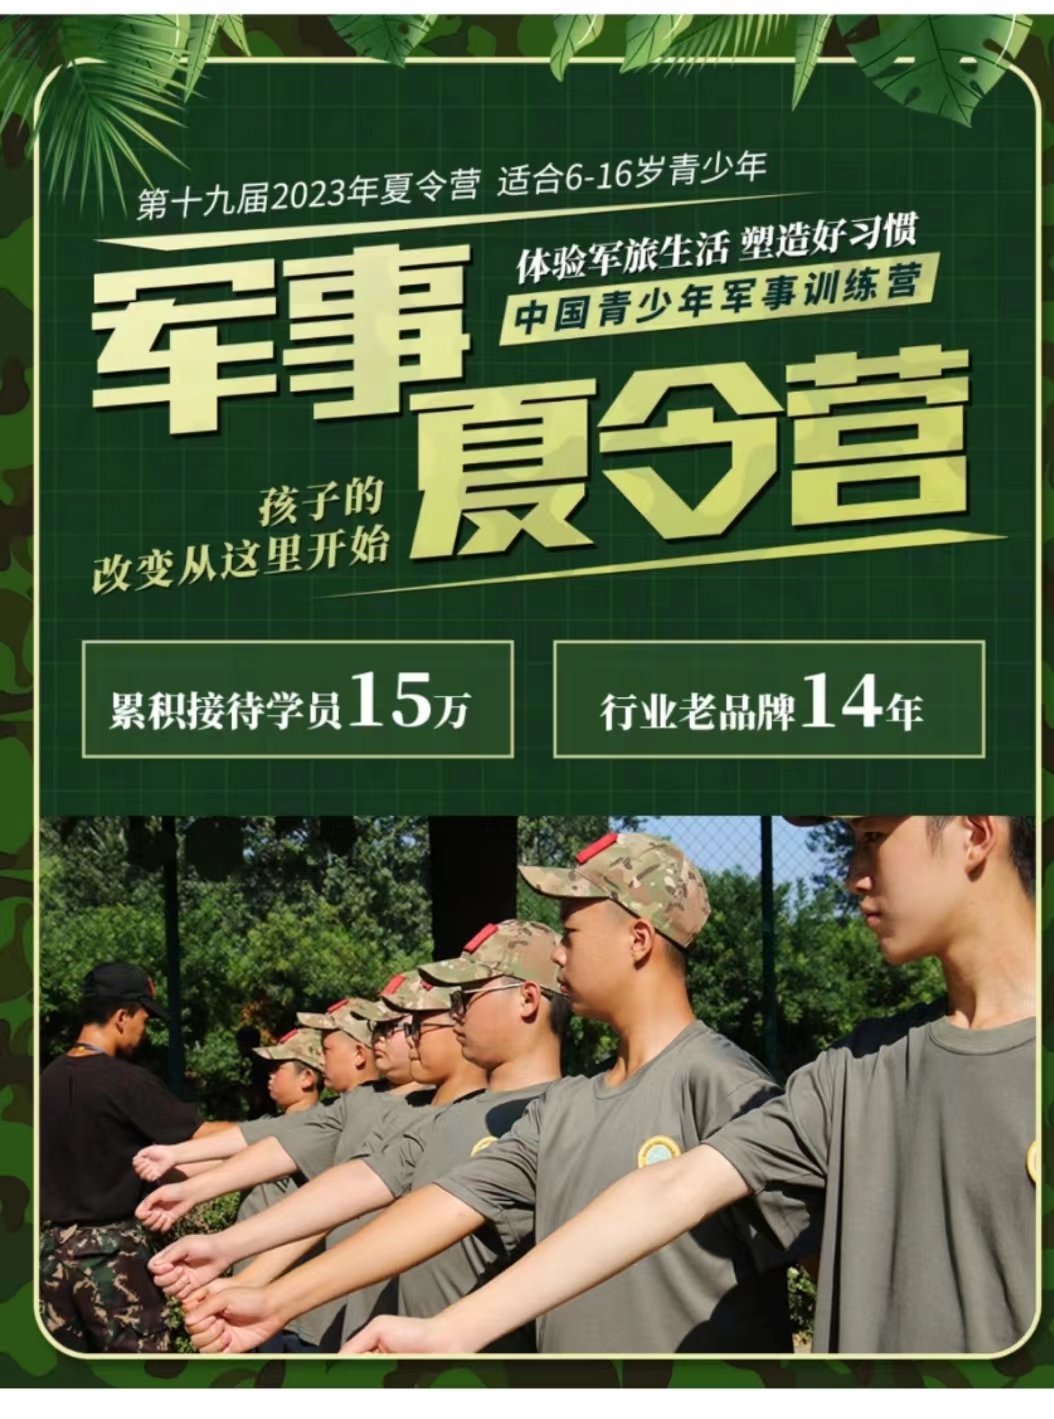 7天军事夏令营2023年青少年军事训练营